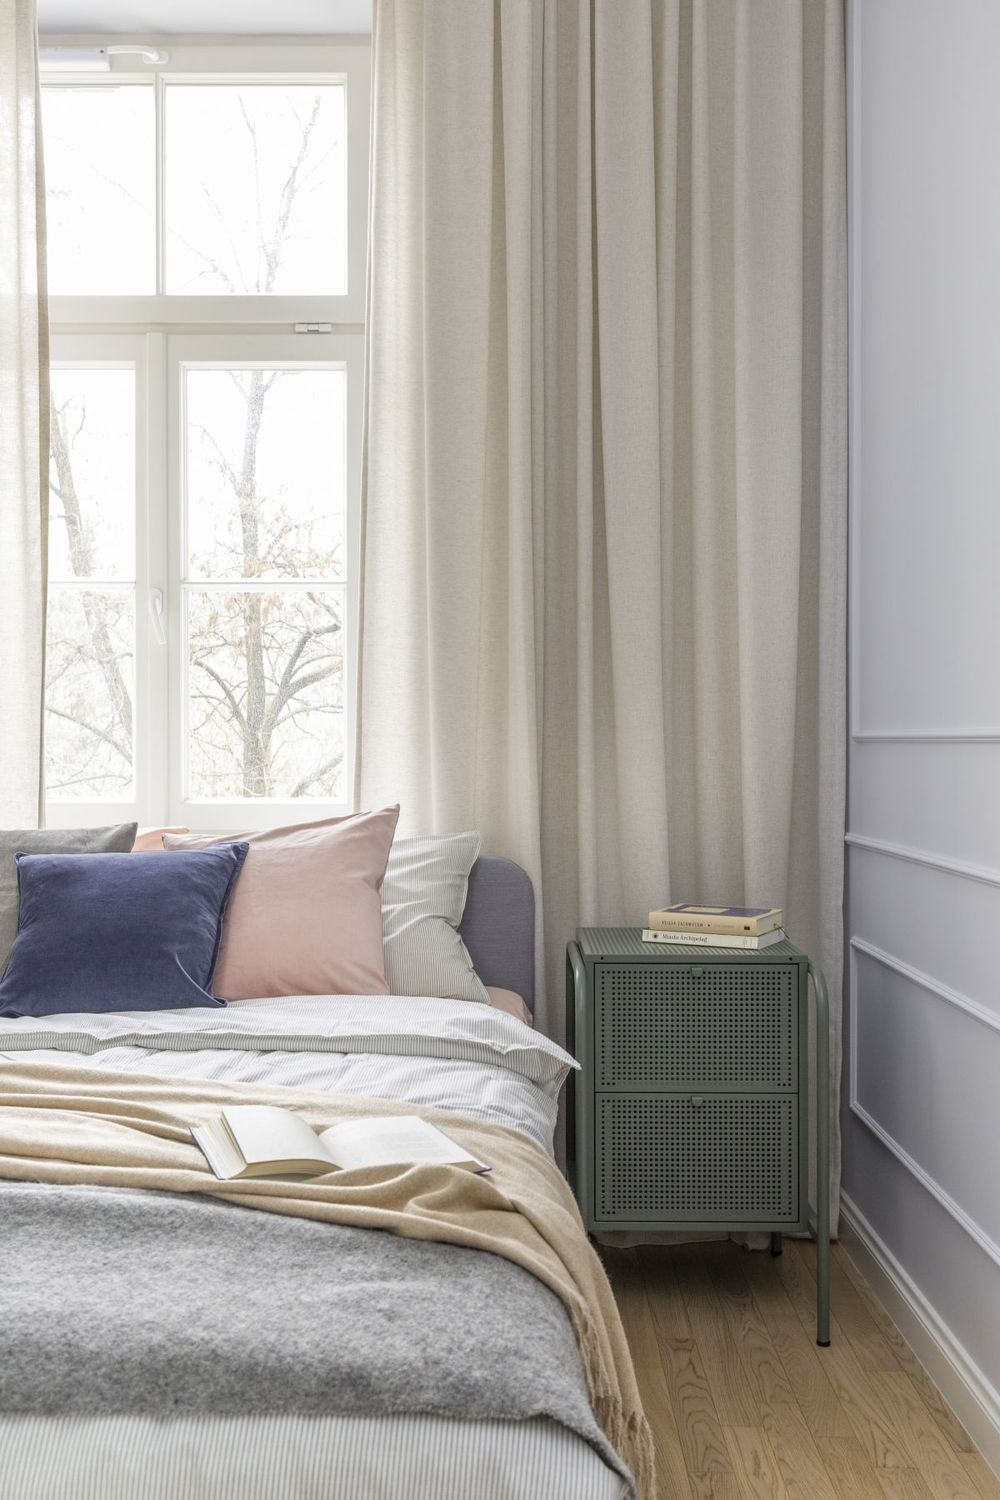 Cuối hành lang phòng khách là phòng ngủ của chủ nhân với thiết kế nhẹ nhàng, sử dụng các gam màu trung tính như trắng, xám, be, đặc biệt là sự nhấn nhá của sắc xanh lam, hồng phấn và xanh ô liu của táp đầu giường.